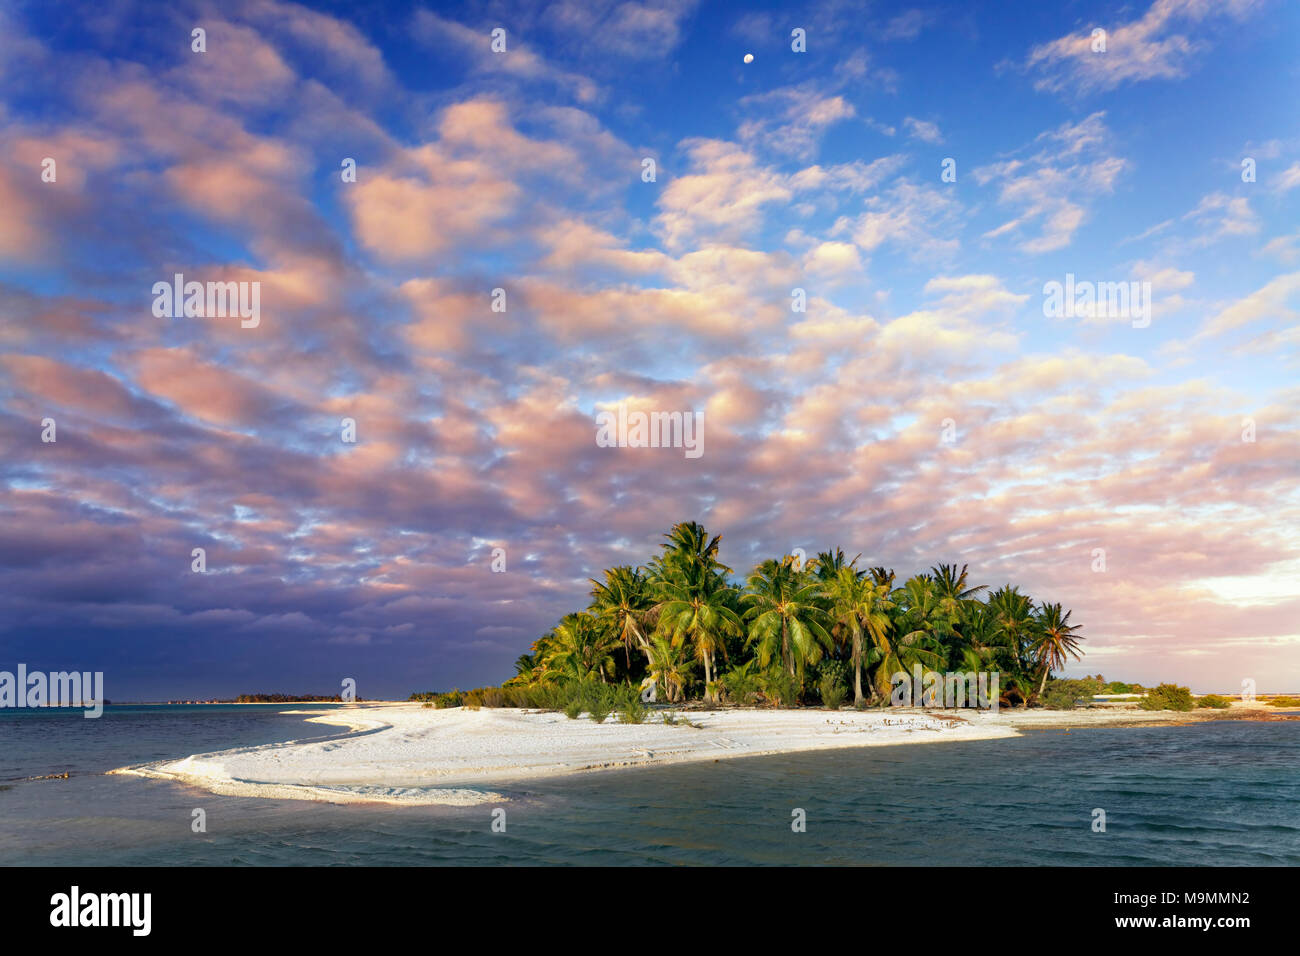 Isola solitaria, spiaggia con palme, nuvole, Tramonto, Tikehau Atoll, Arcipelago Tuamotu, isole della Società, isole sopravento Foto Stock